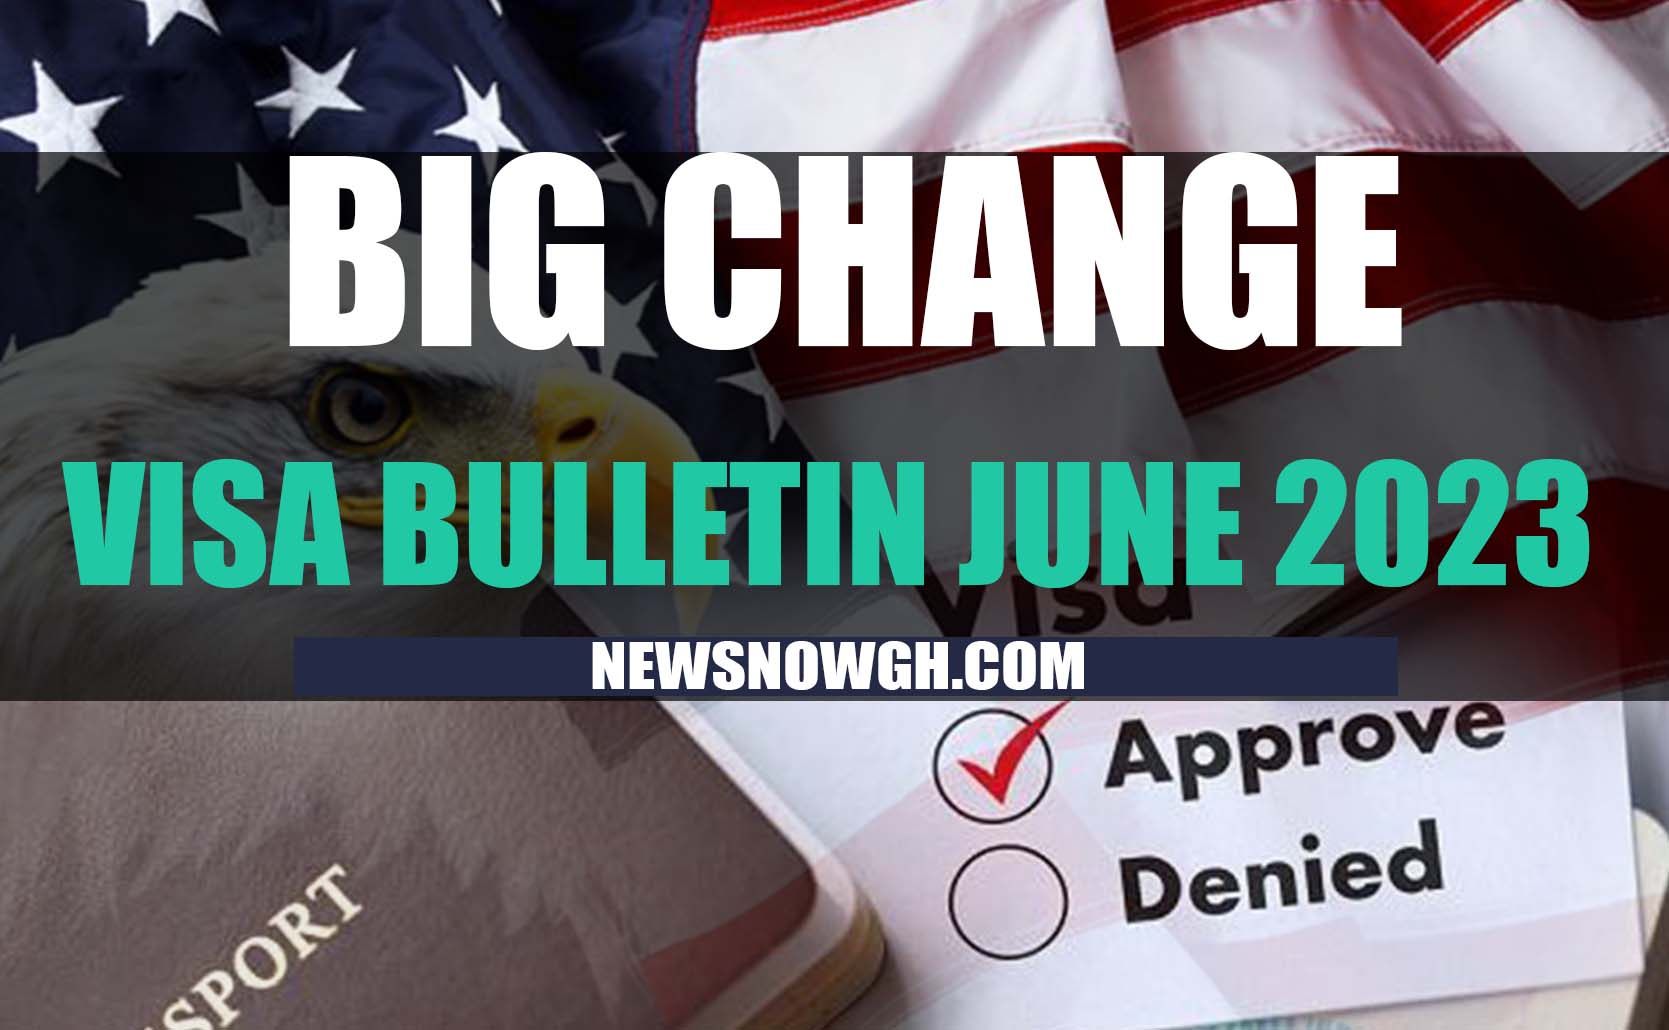 BIG CHANGE VISA BULLETIN FOR JUNE 2023